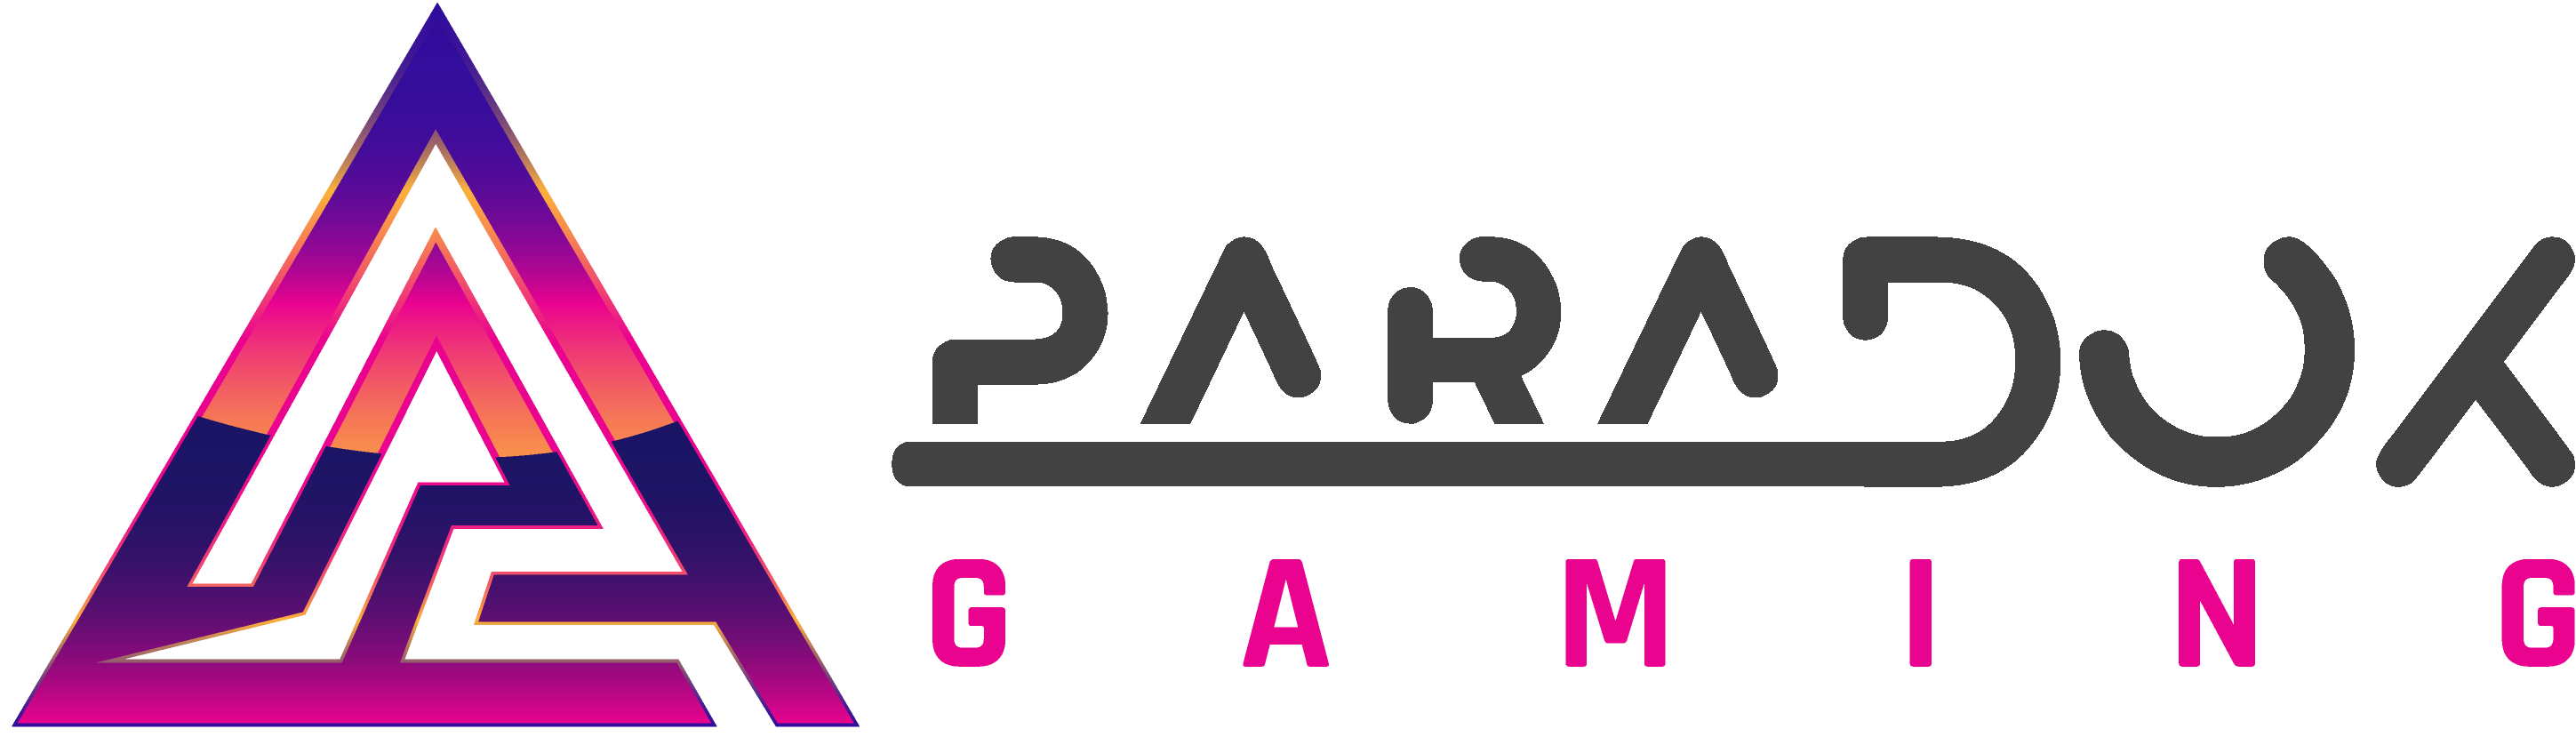 Paradox-Gaming-Logo-Horizontaltext.png